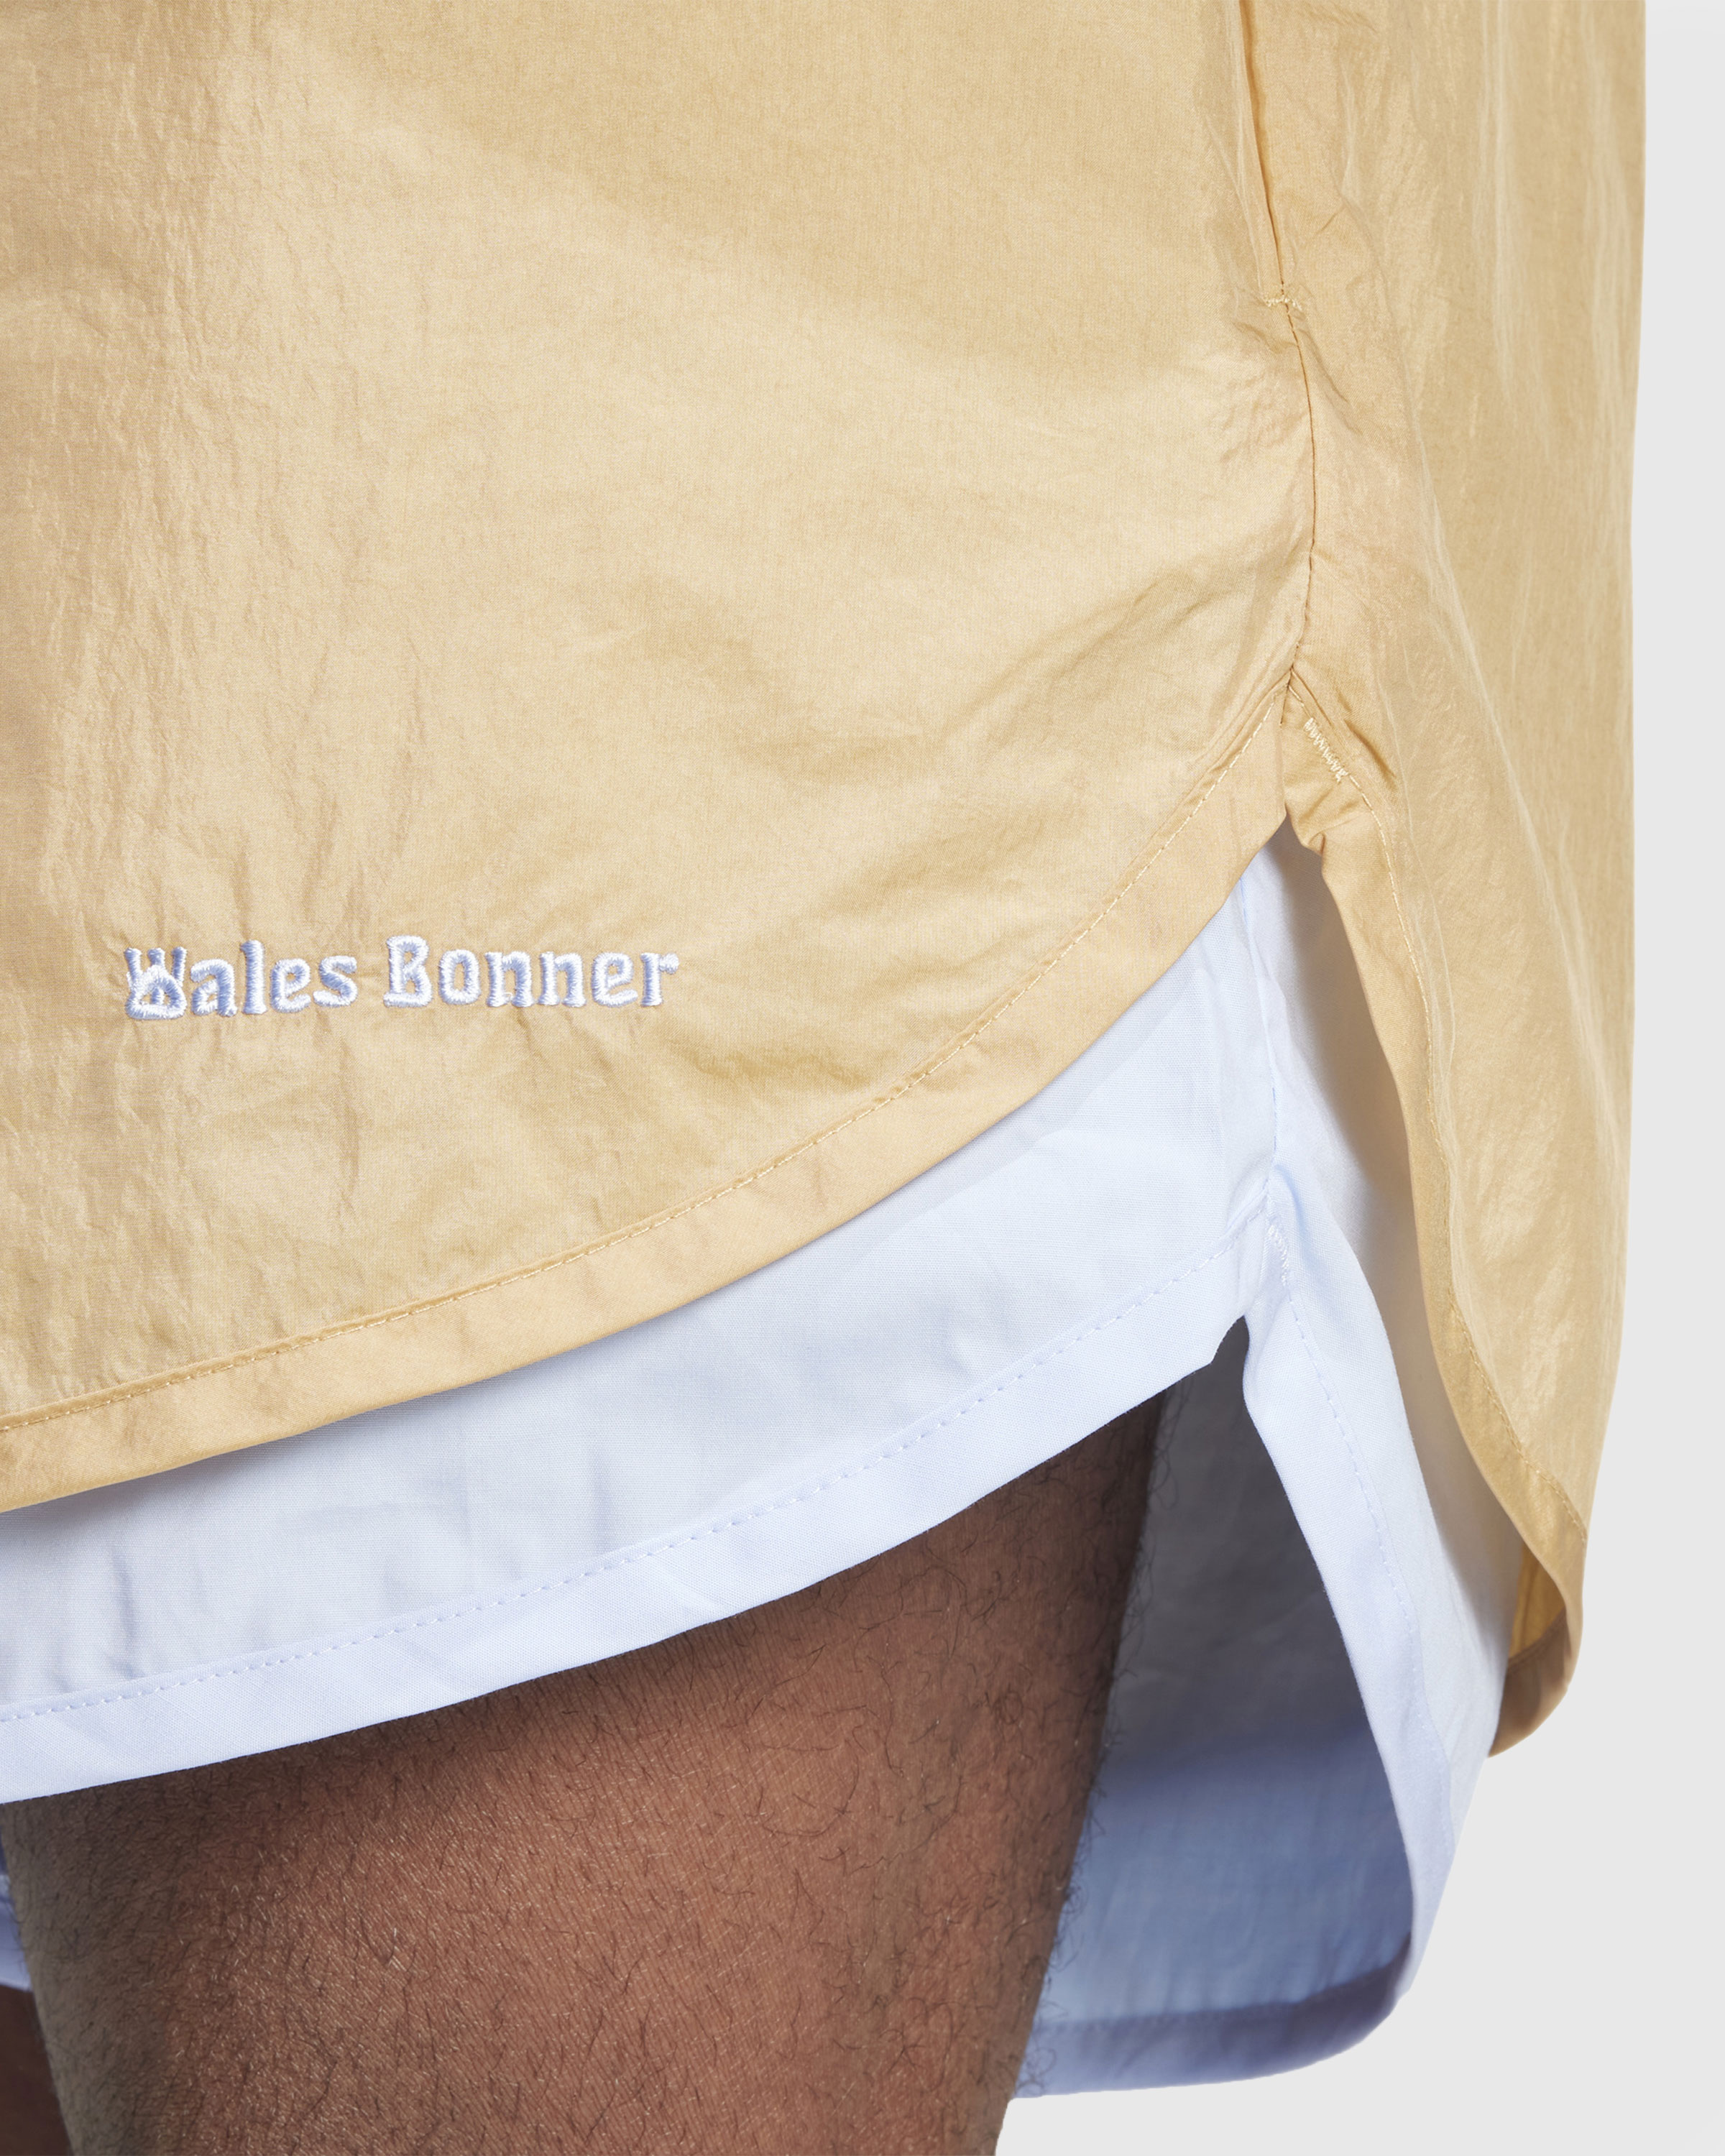 Adidas x Wales Bonner – Nylon Shorts Beige - Active Shorts - Beige - Image 5